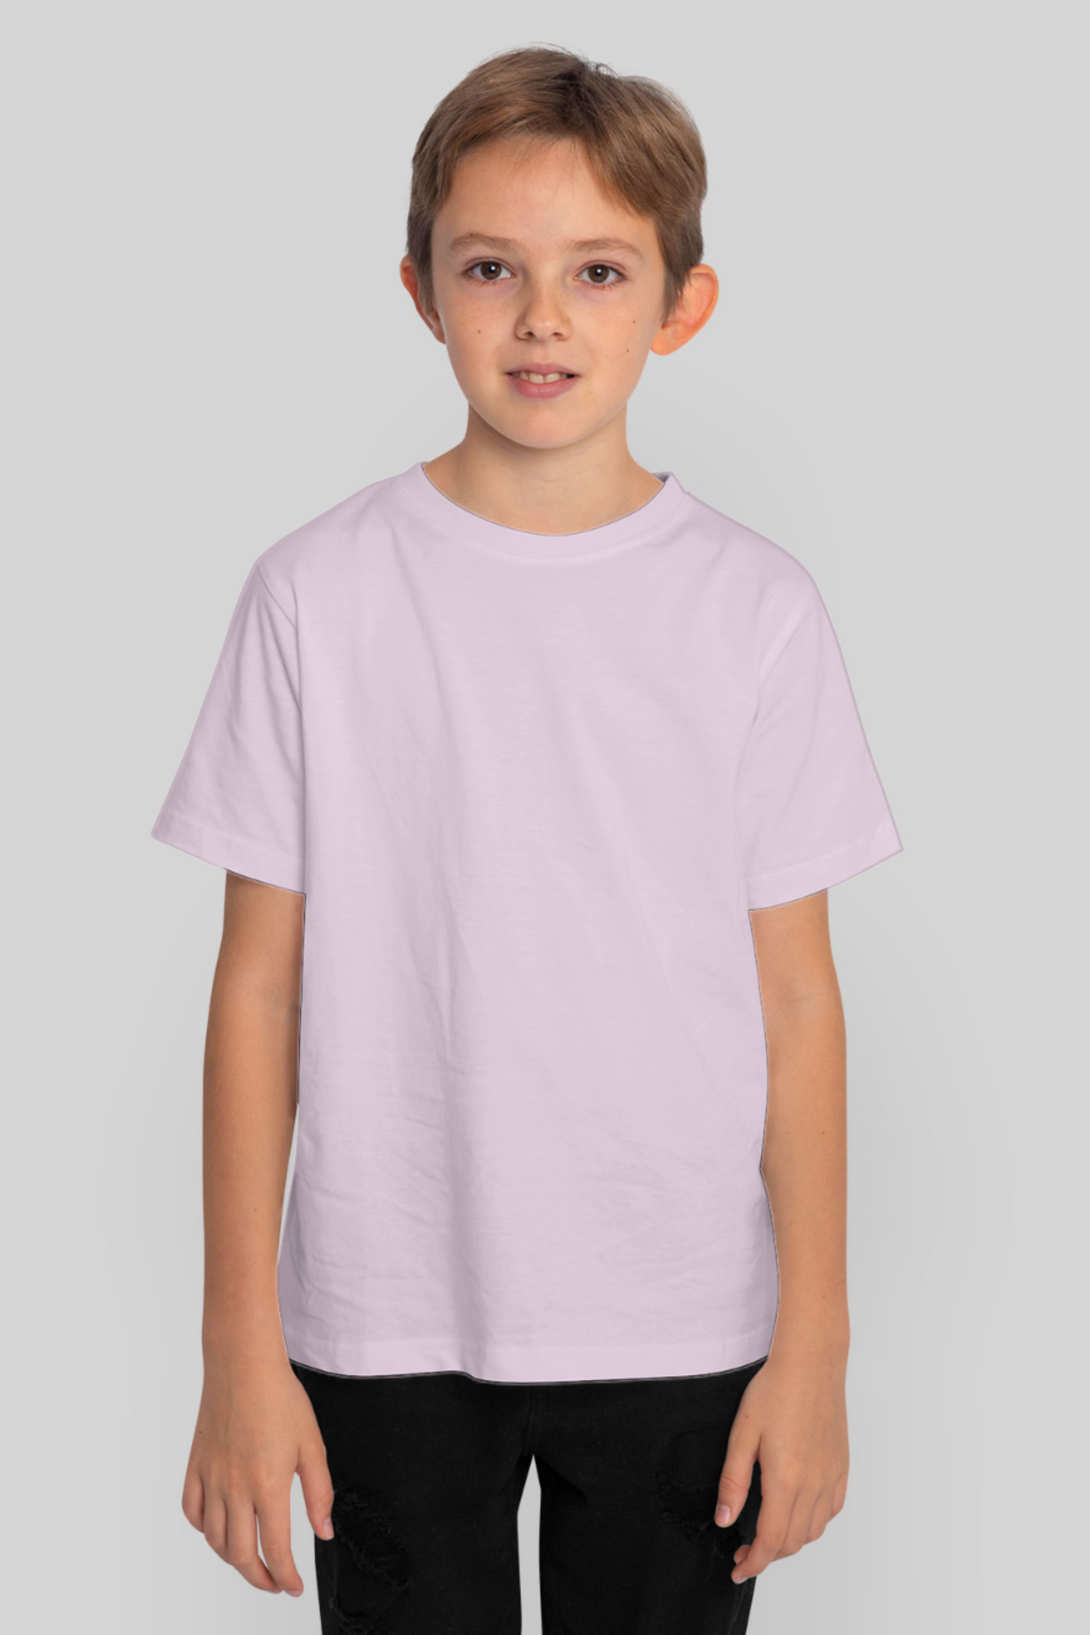 Light Pink T-Shirt For Boy - WowWaves - 1